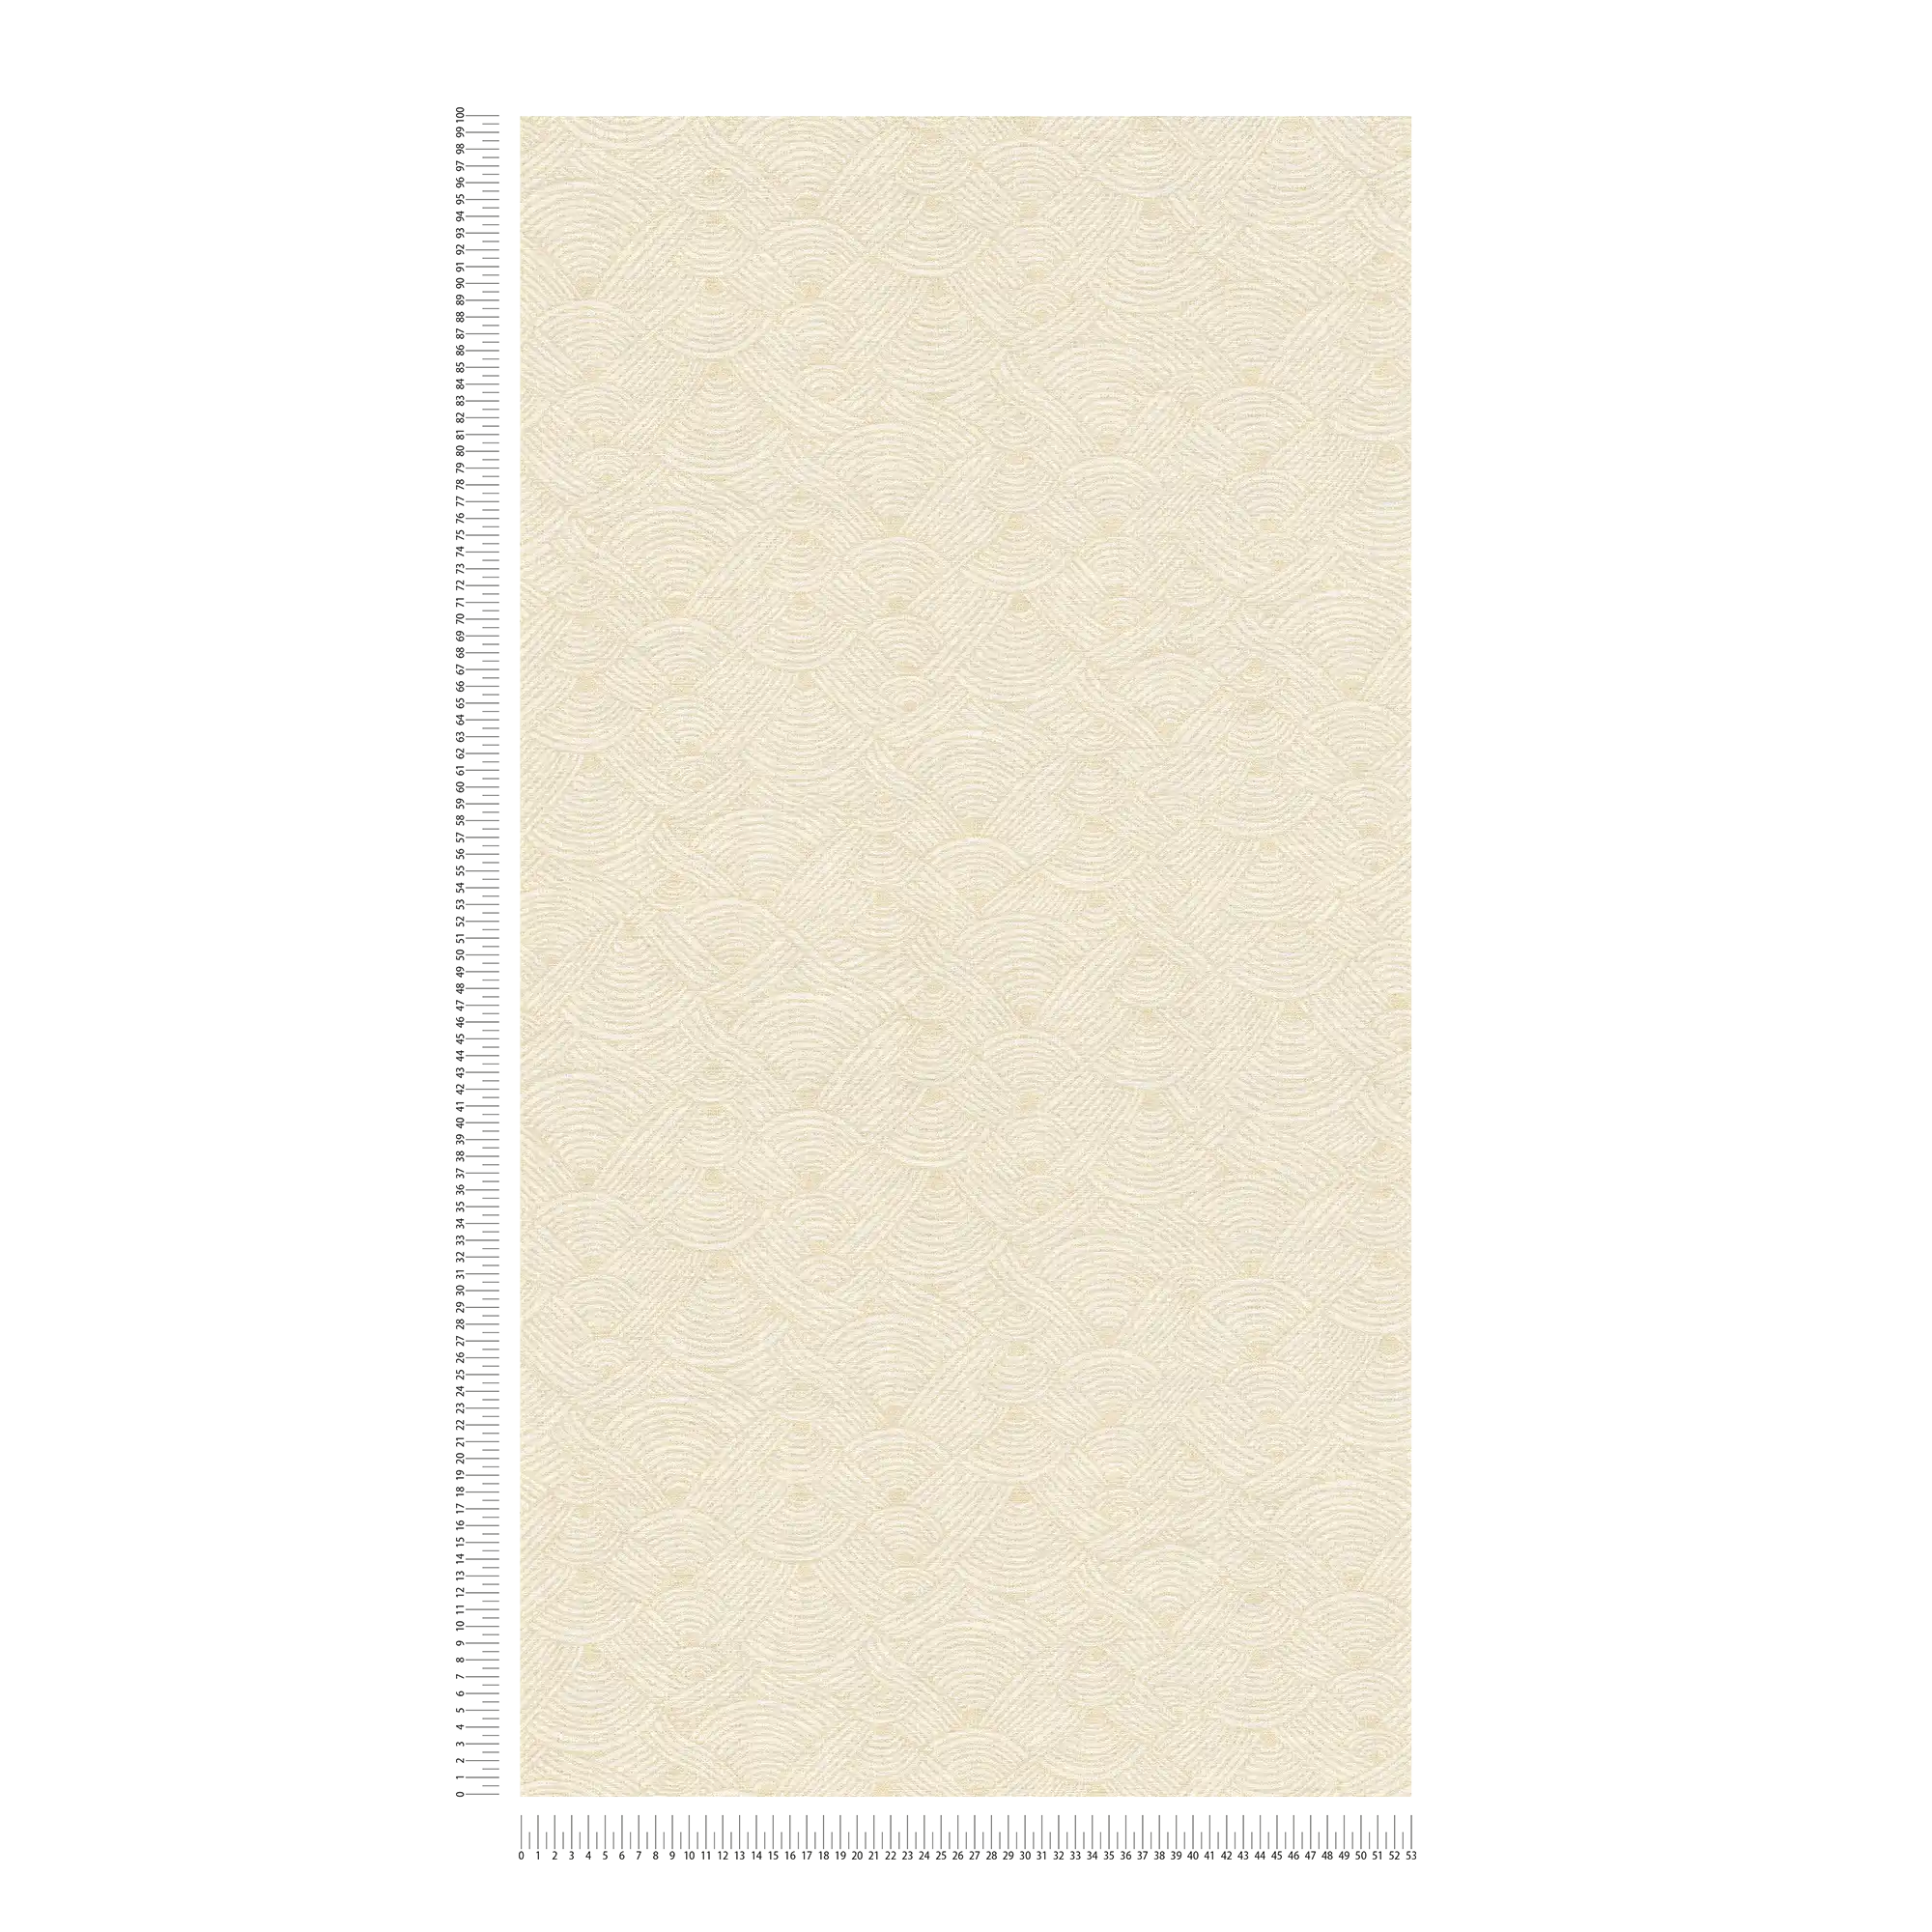             Vliestapete Flechten Design im Ethno Stil – Creme, Weiß
        